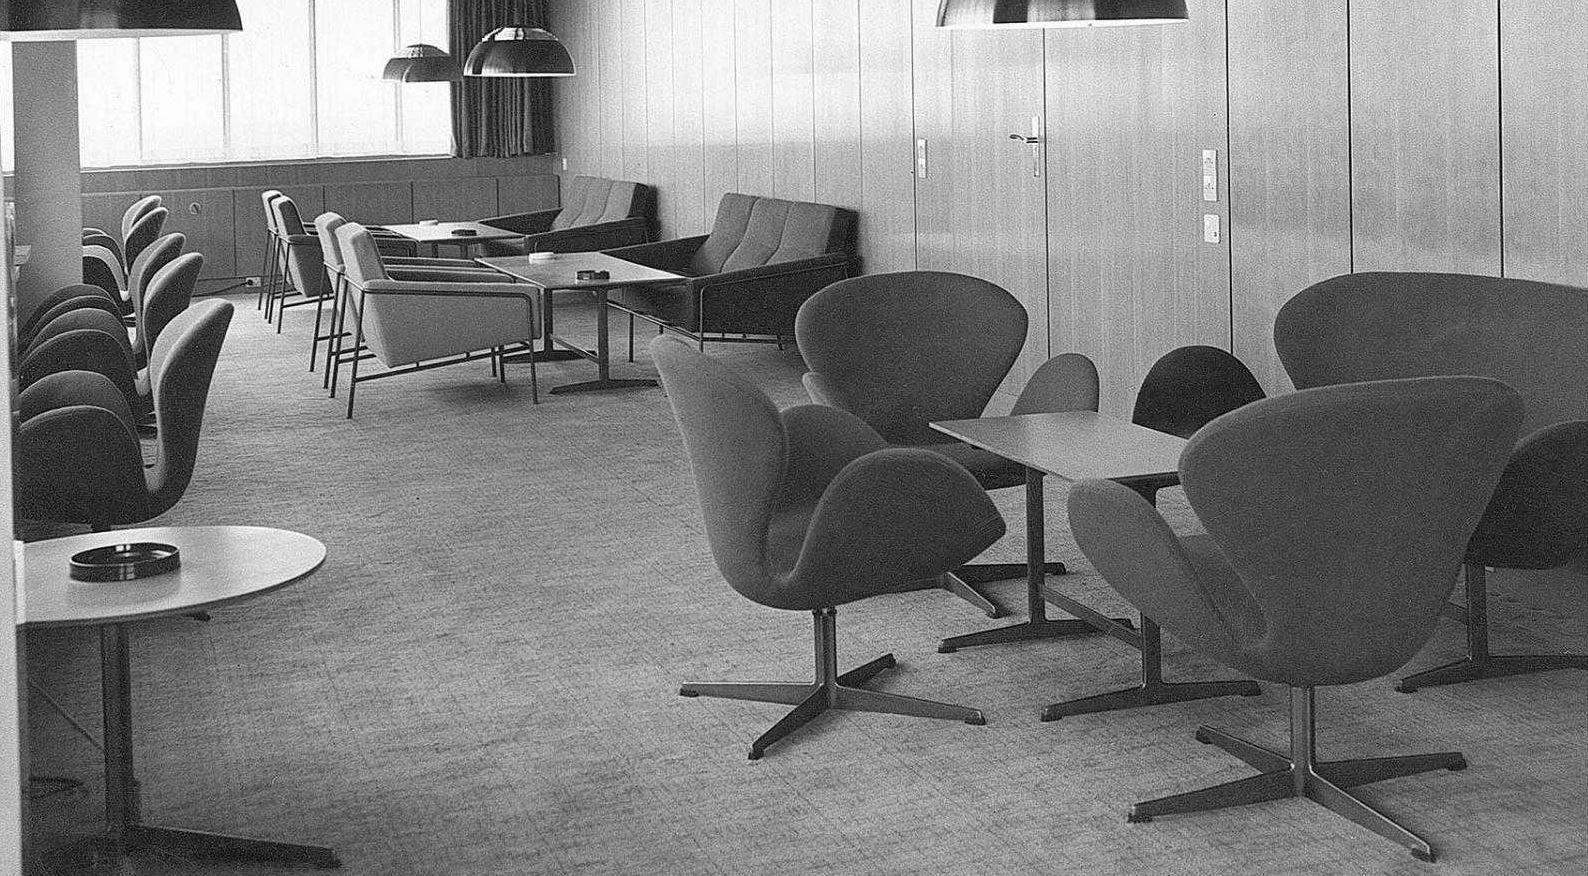 L'un des designs les plus reconnaissables d'Arne Jacobsen est sans aucun doute le rare canapé 